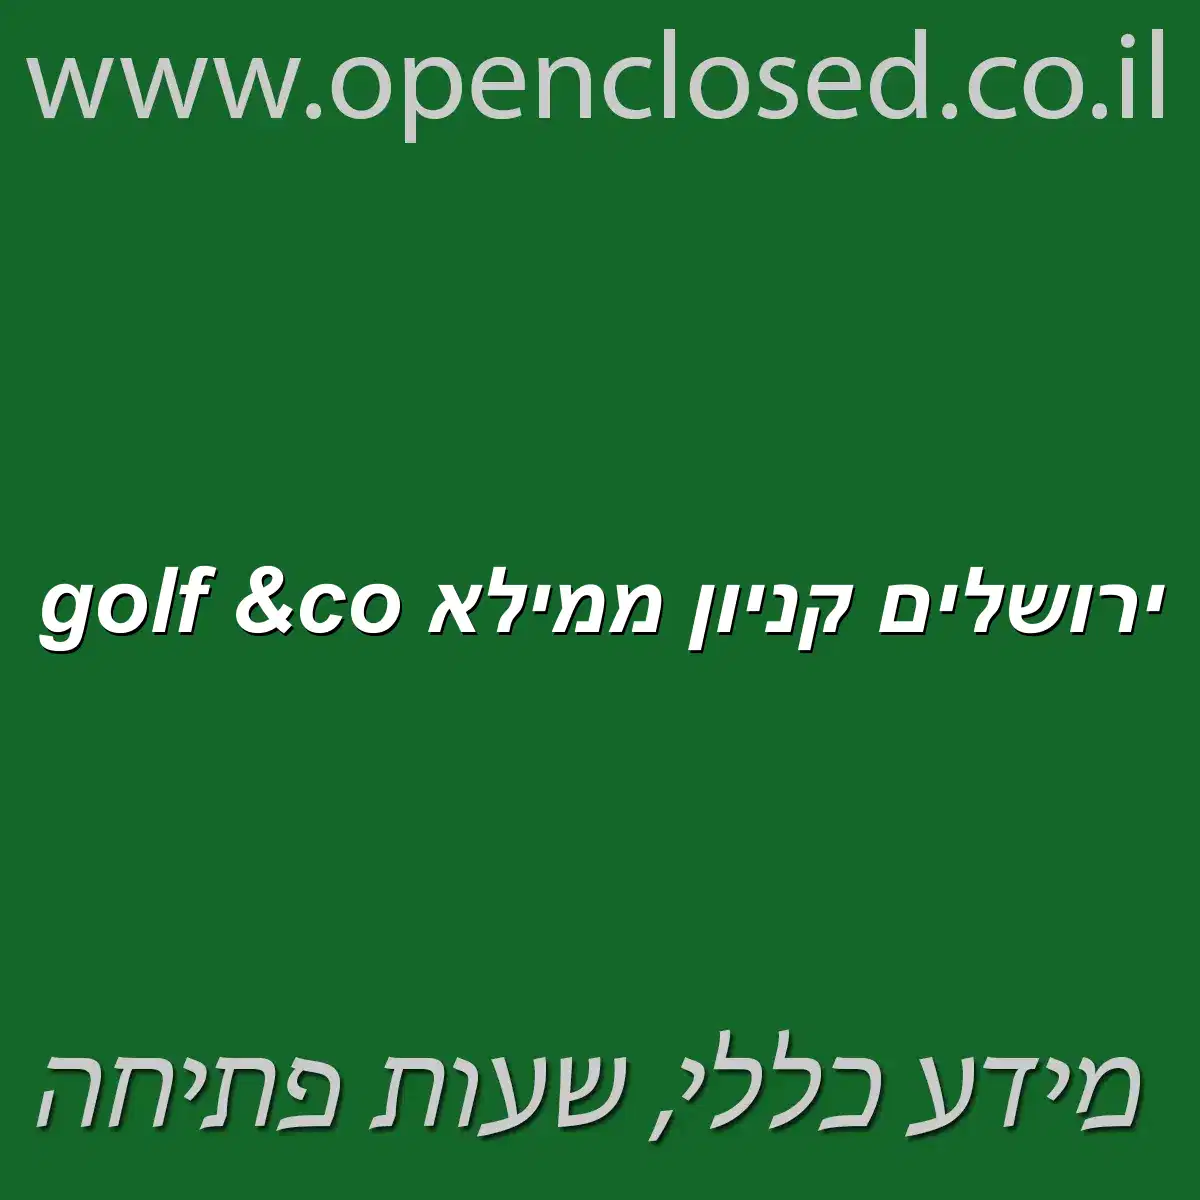 golf &co ירושלים קניון ממילא